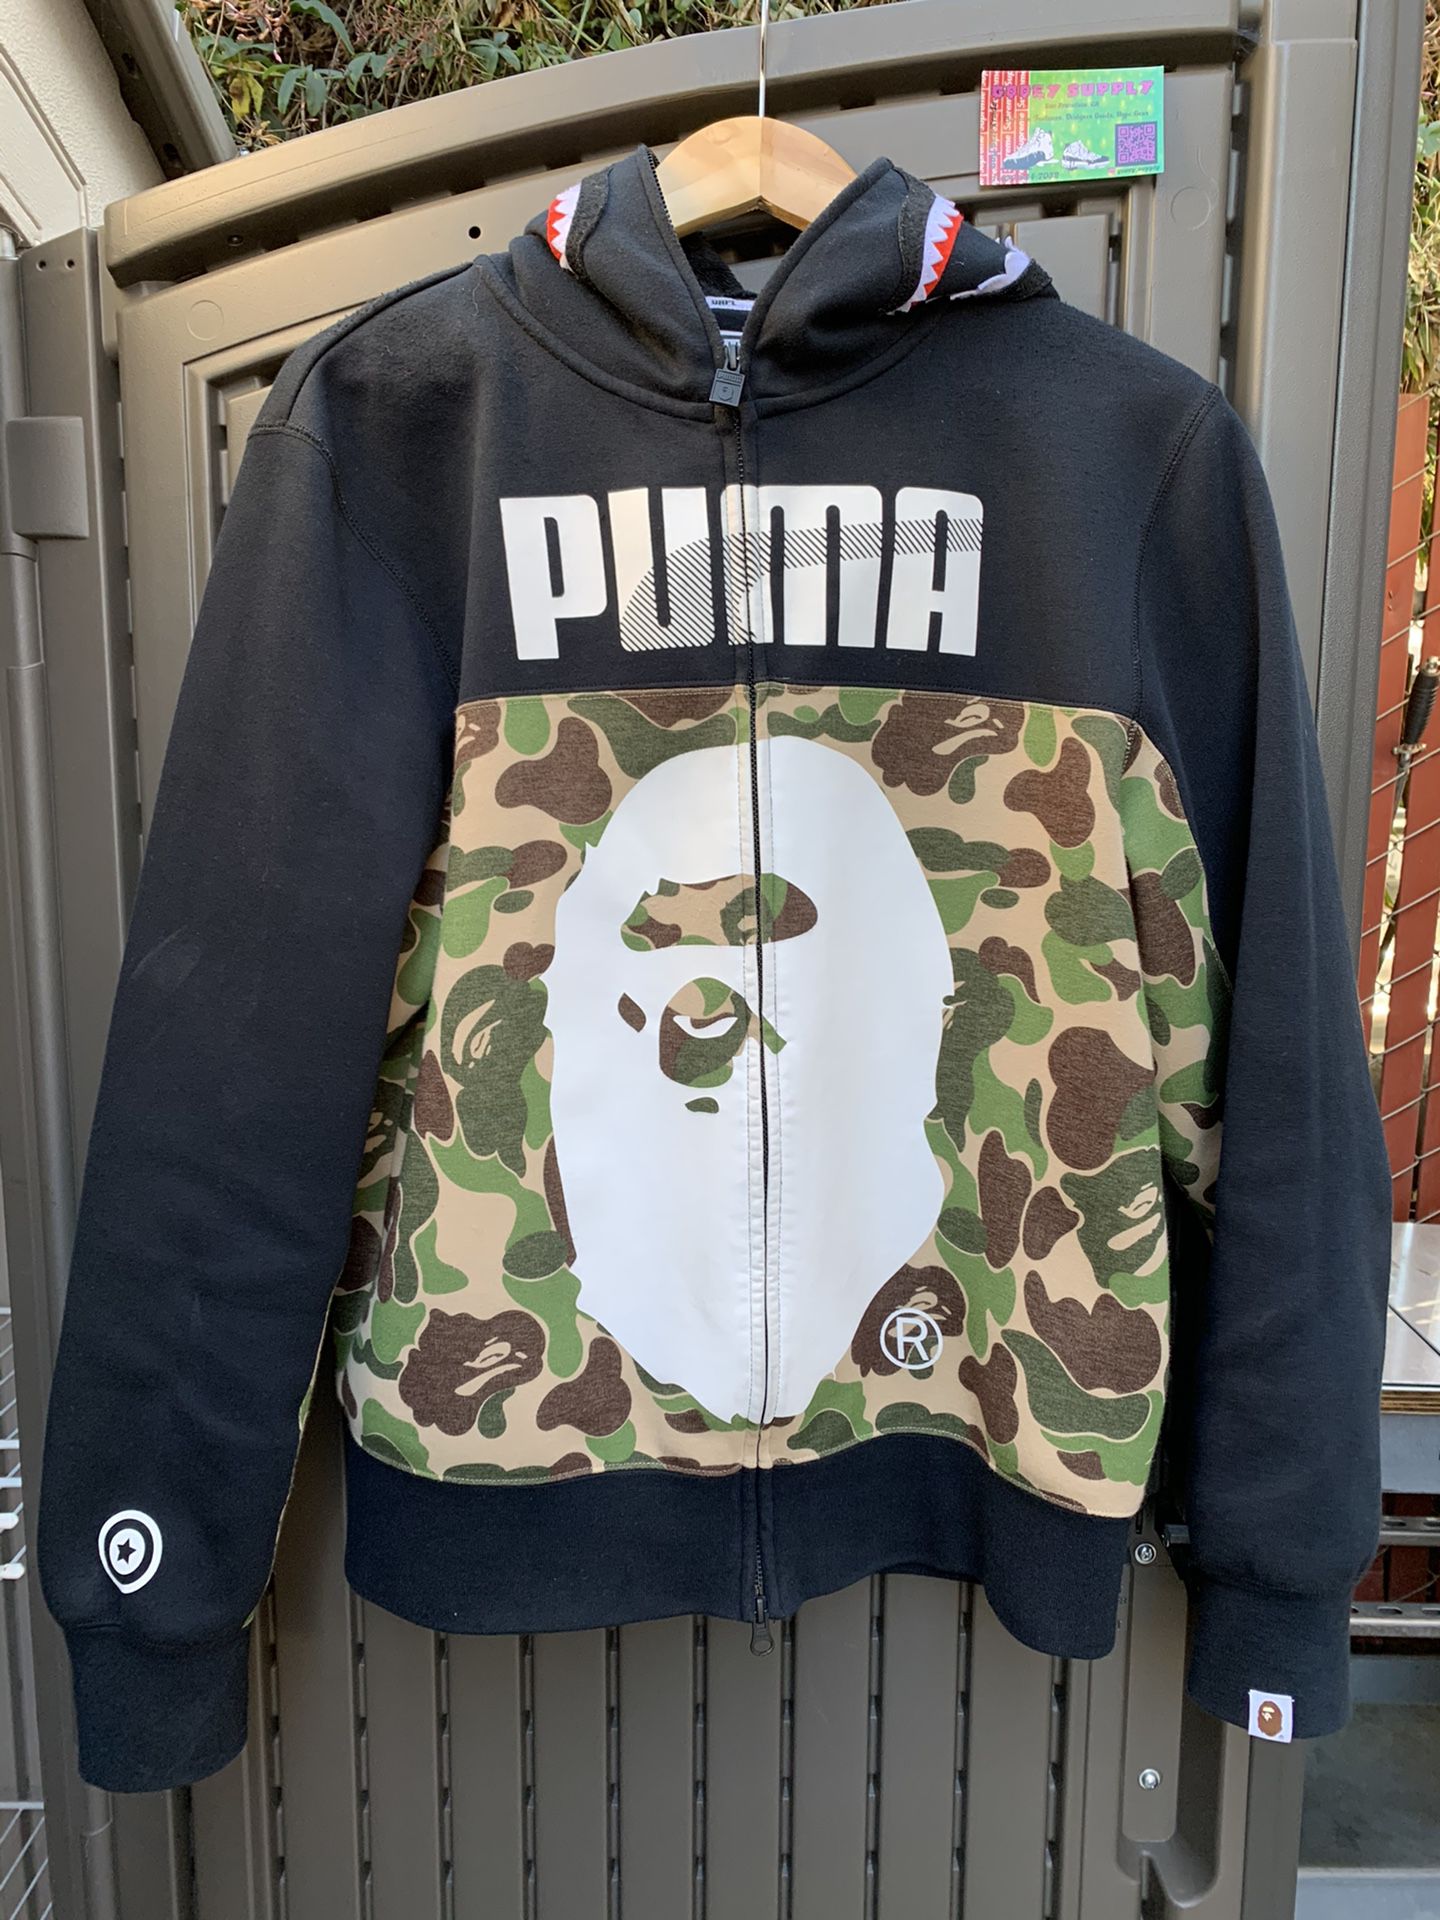 Puma x Bape Hoodie - Size Large